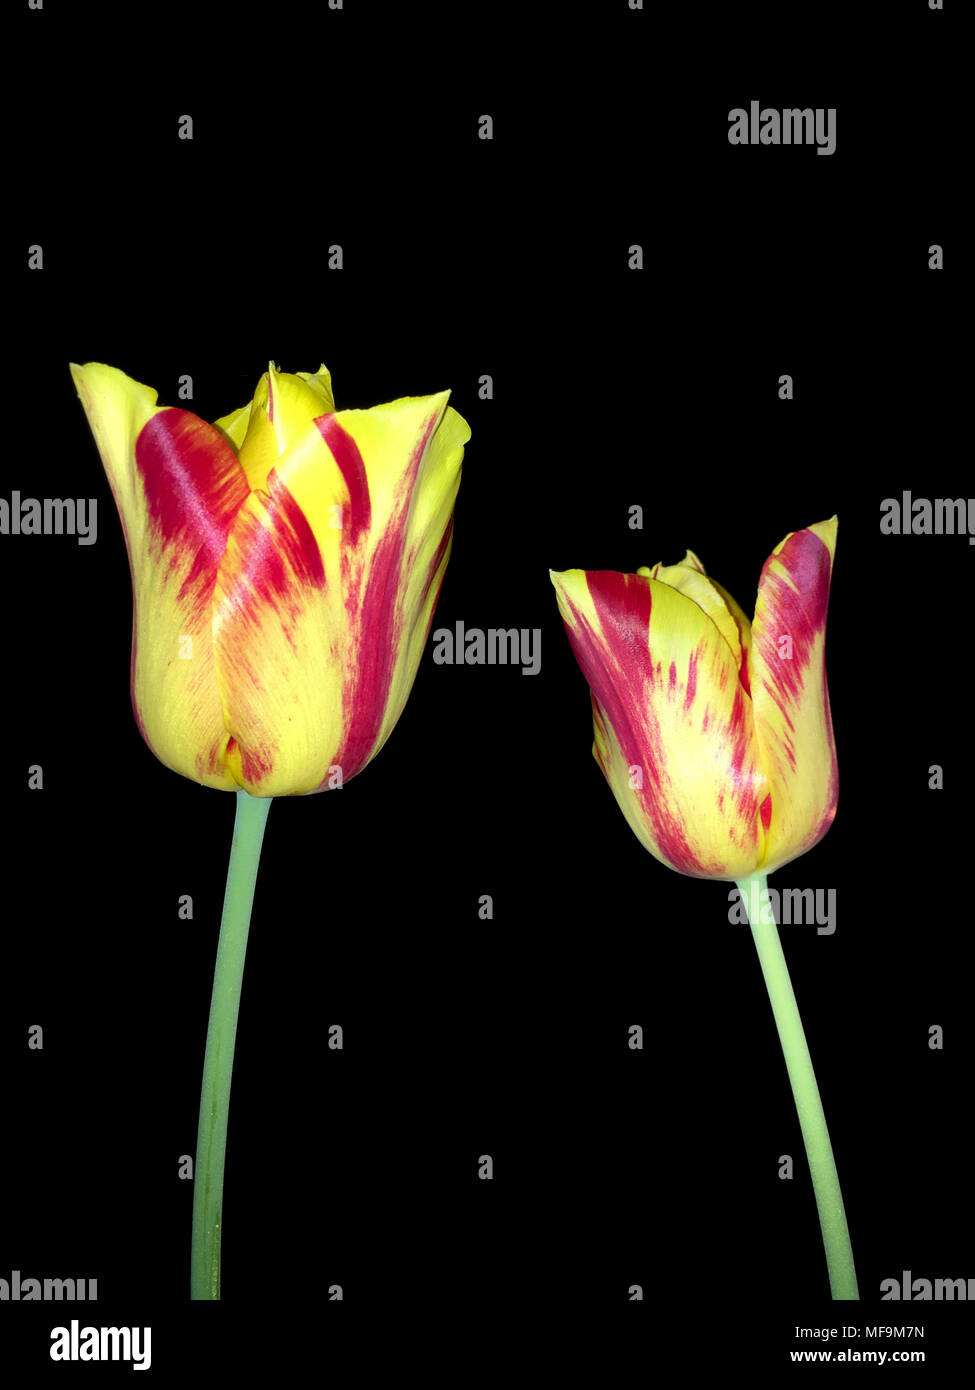 Dos tulipanes rojos y amarillos en tallos verdes contra un fondo negro, disparó al aire libre por la noche en color con flash Foto de stock